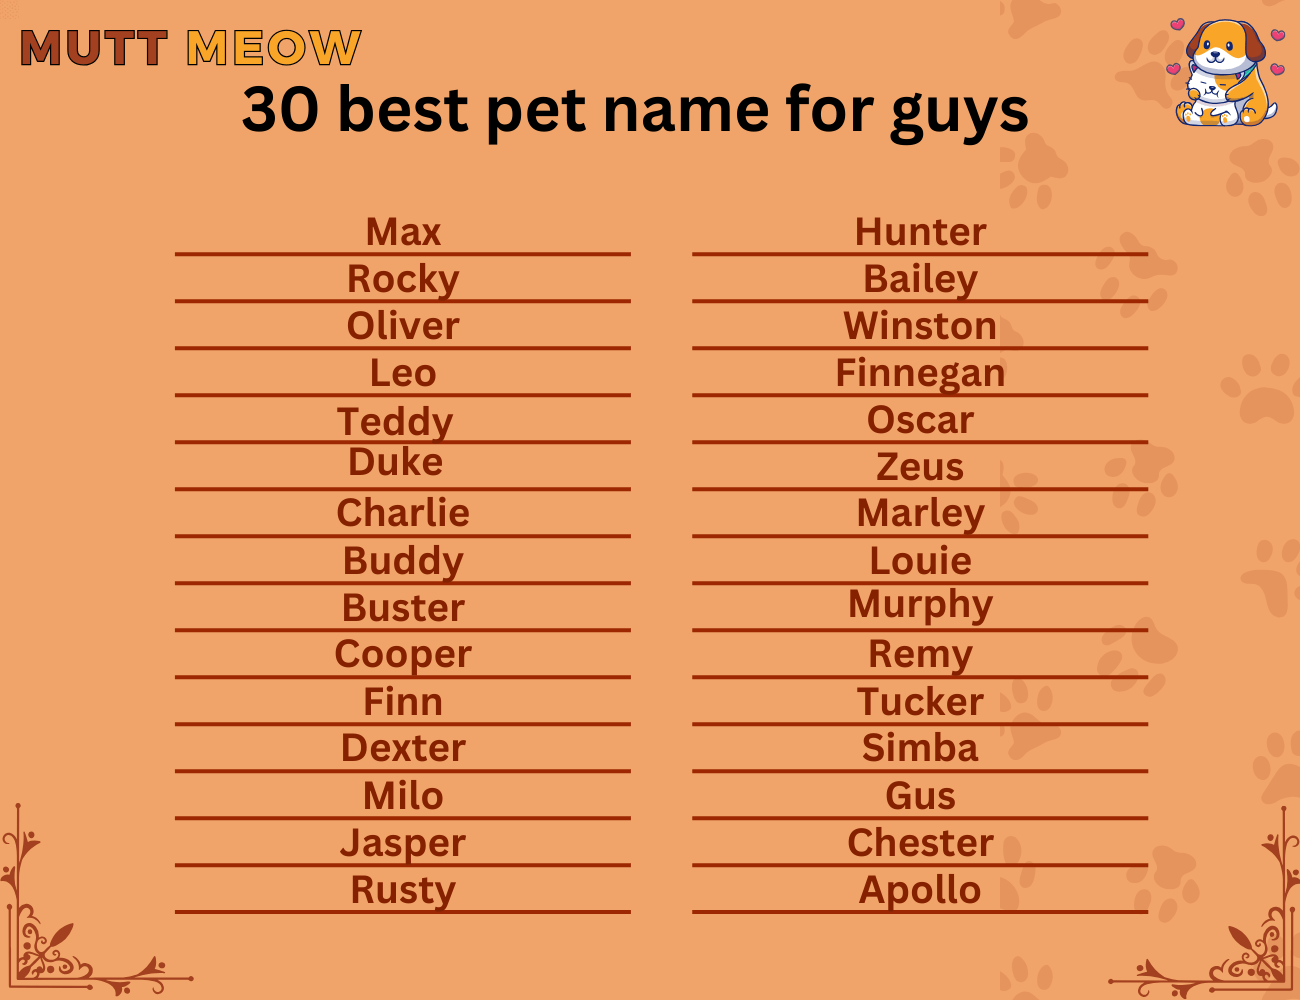 Bulk 1 30 Best Pet Name For Guys 1 